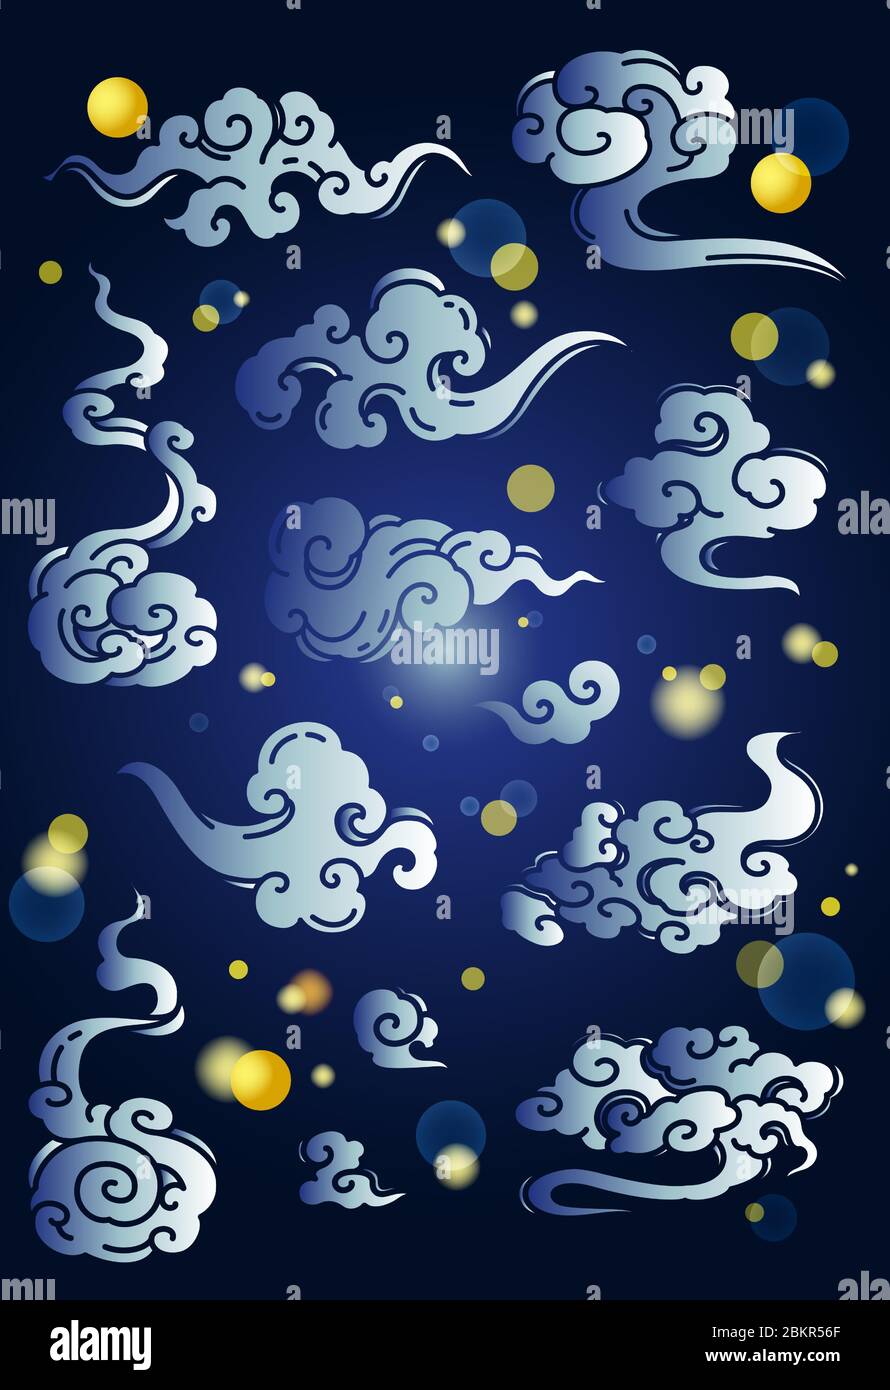 Chinesische Wolken traditionell in Blau- und Goldtönen. Für Mitte Herbst oder Neujahr Festival Artwork, etc. Bokeh Licht graphikund Mond.- Vektor. Stock Vektor